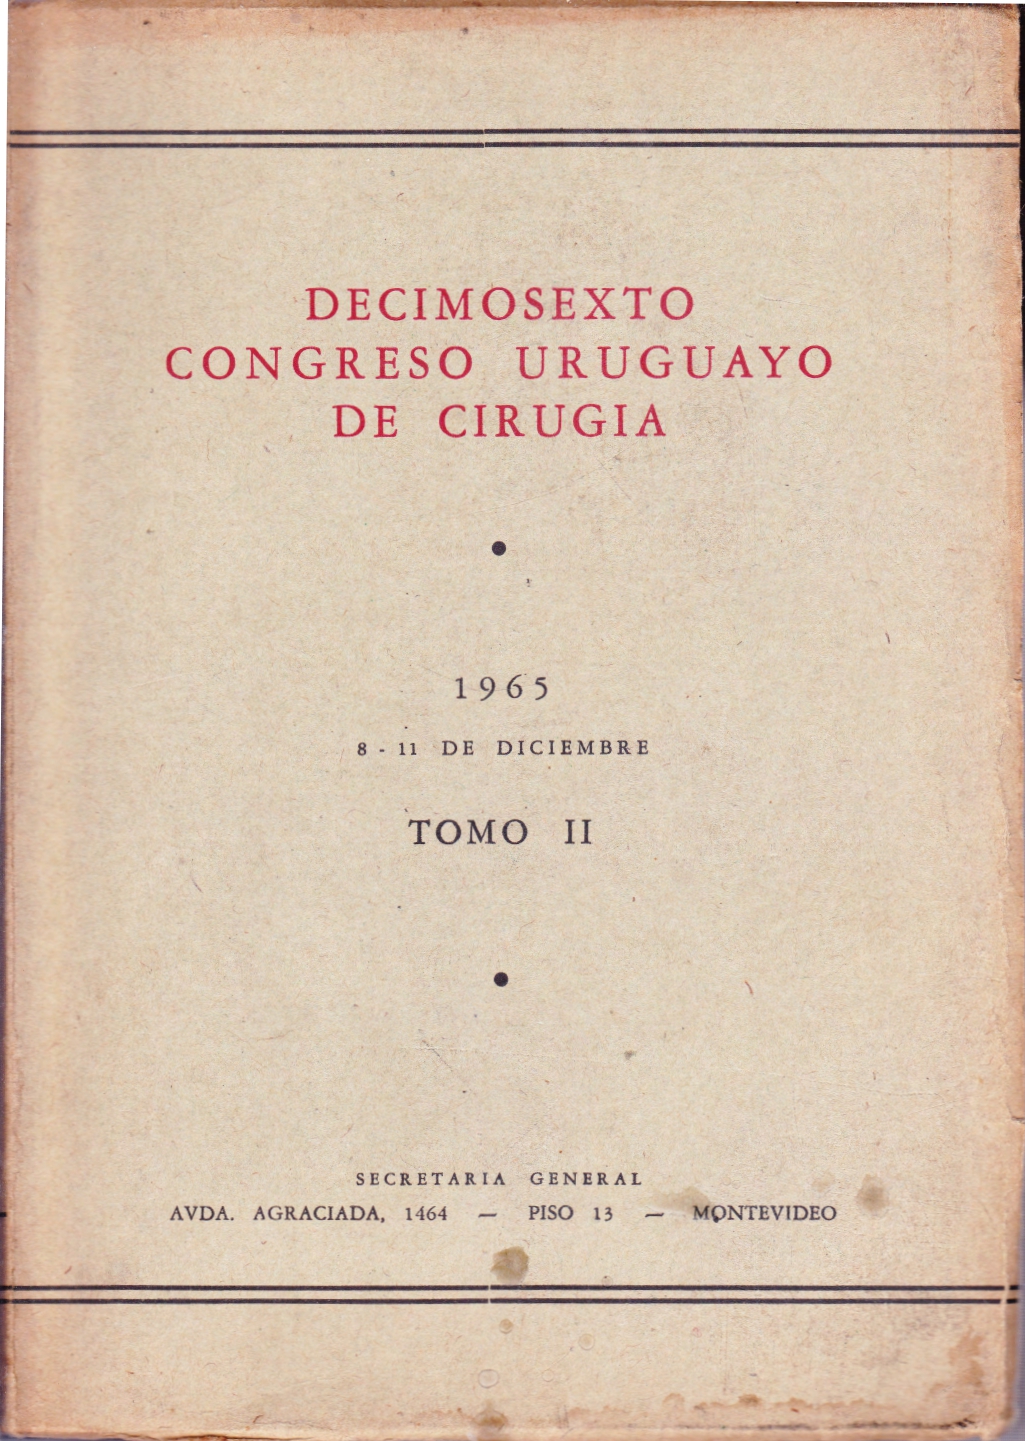 					Ver Núm. 2 (1965): Congresos Uruguayos de Cirugía
				